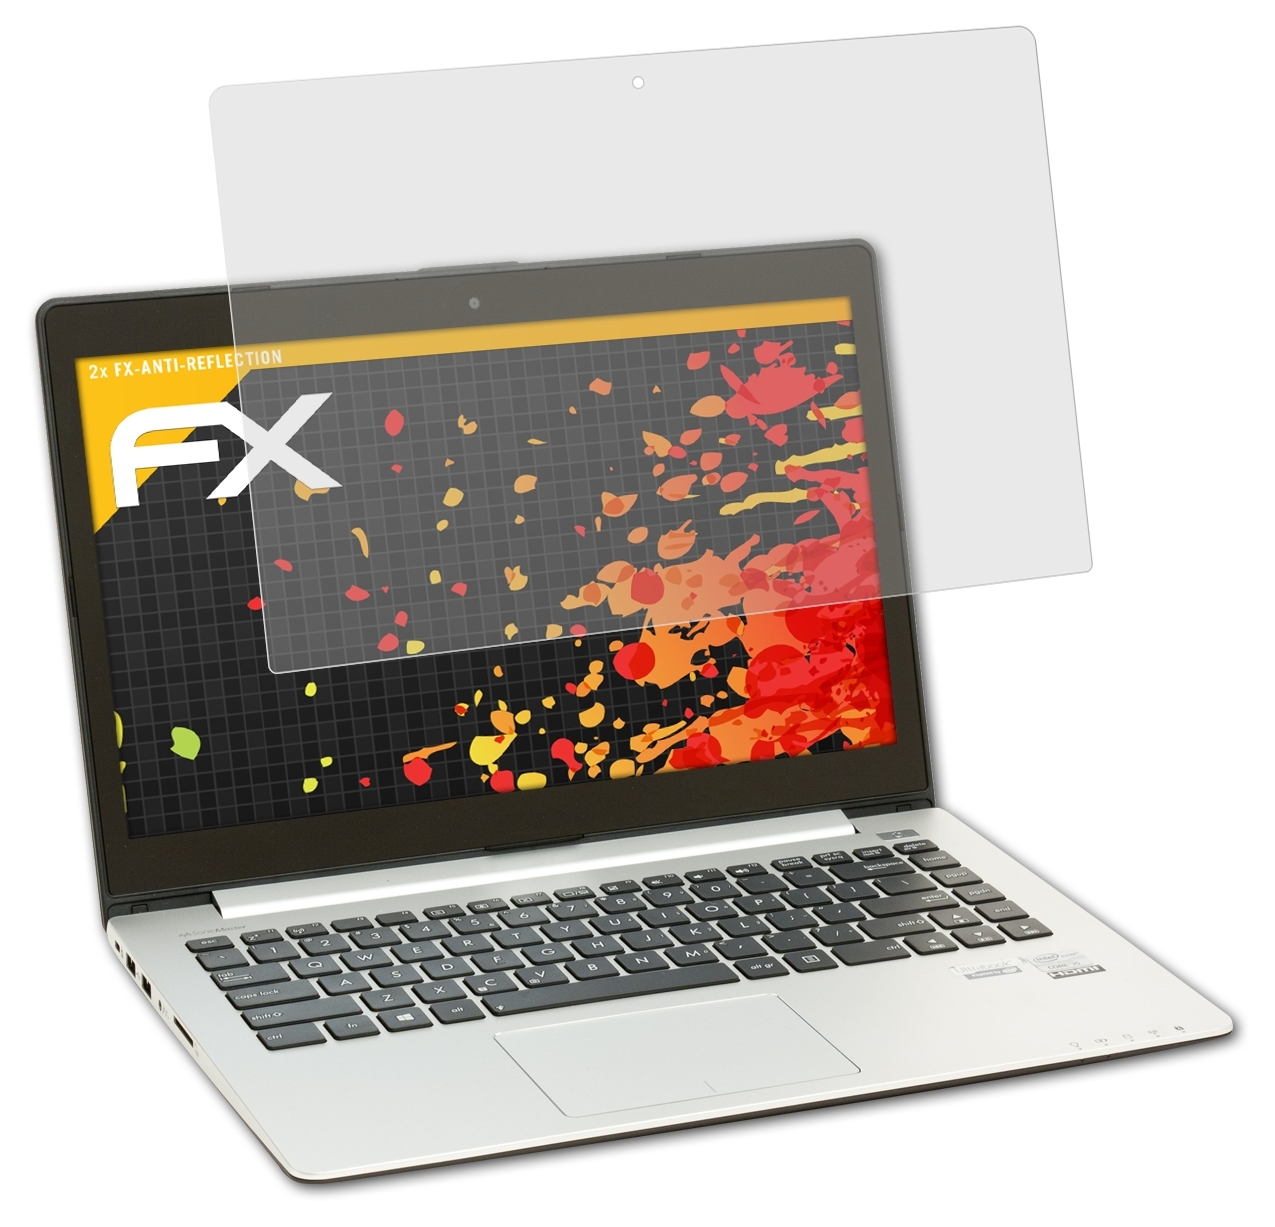 ATFOLIX 2x FX-Antireflex Asus VivoBook S400CA) Displayschutz(für